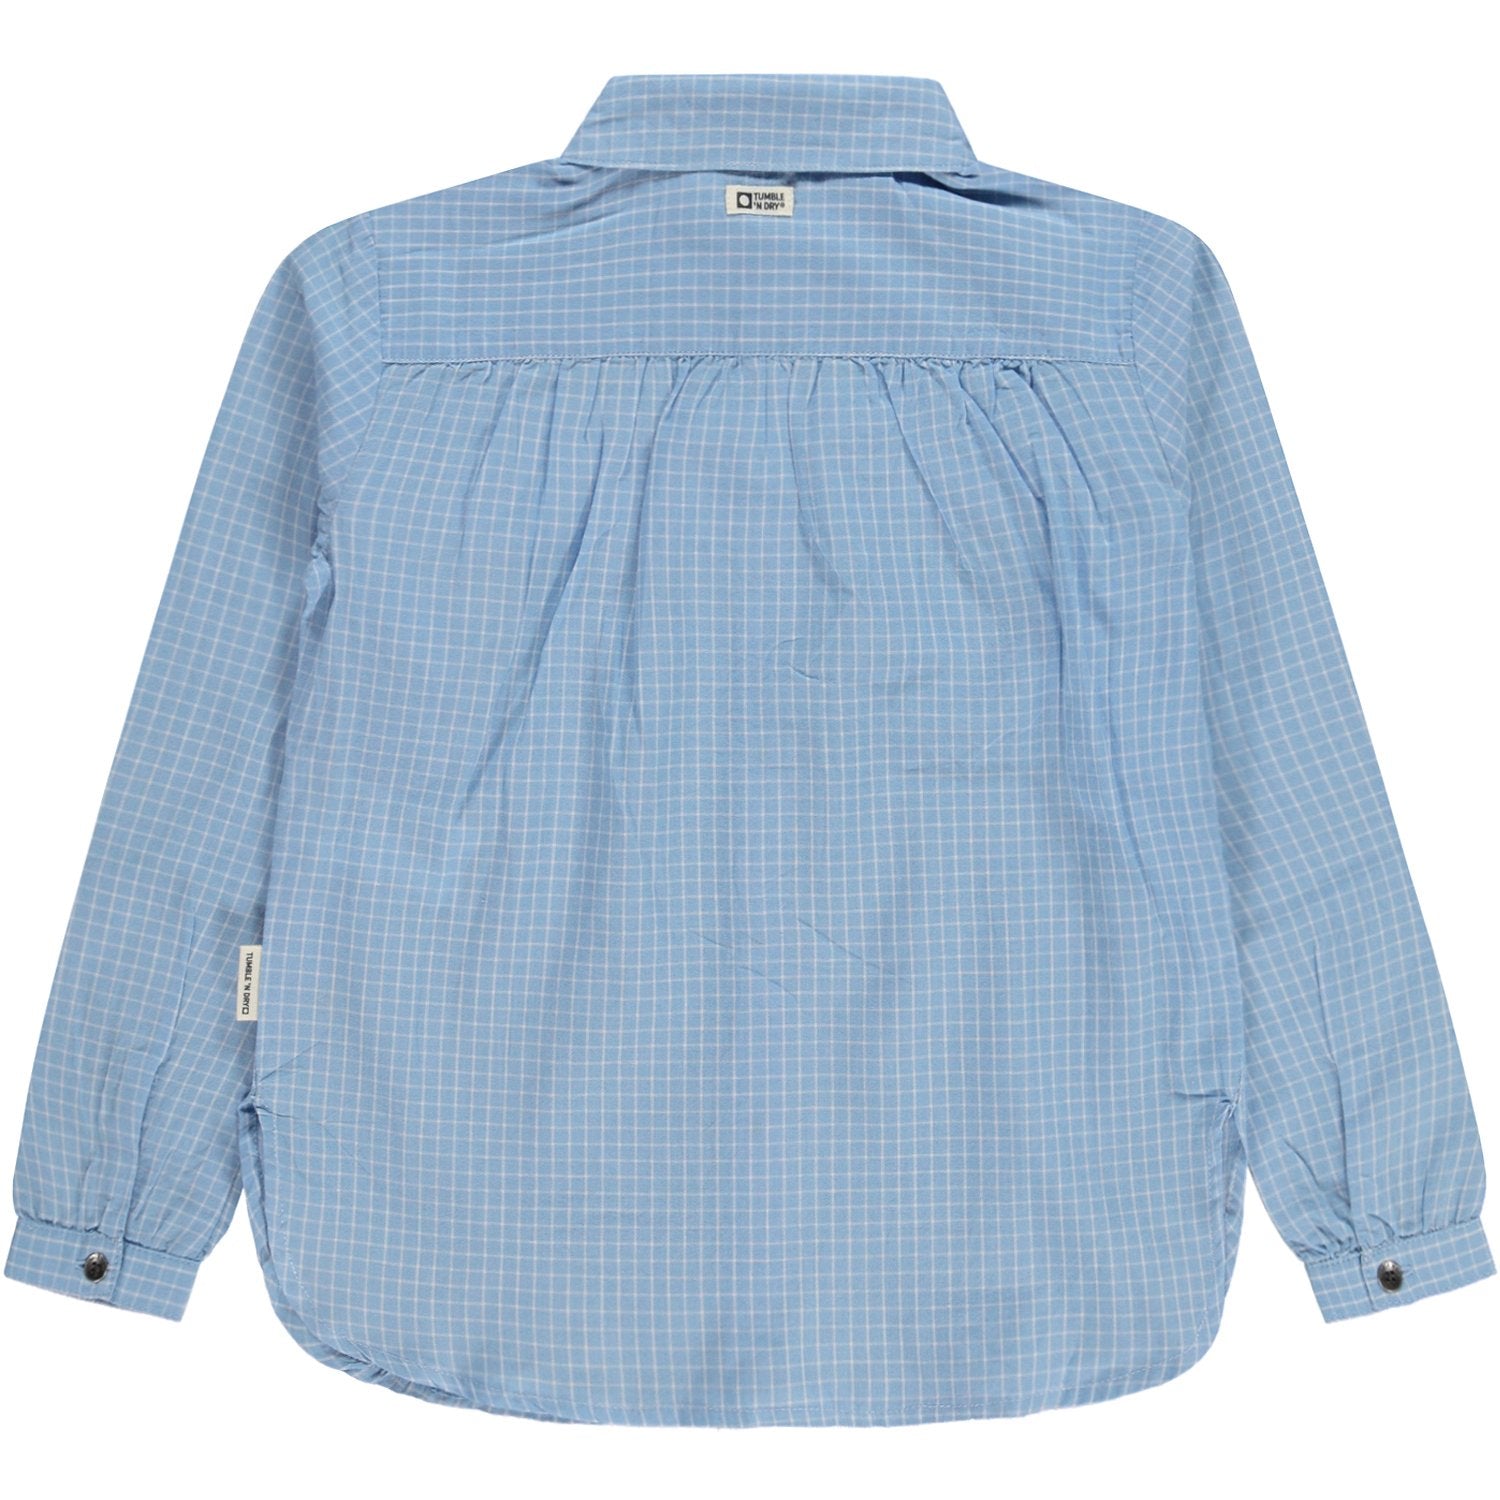 Meisjes Shirt Lm van Tumble 'n Dry in de kleur Placid blue in maat 134/140.